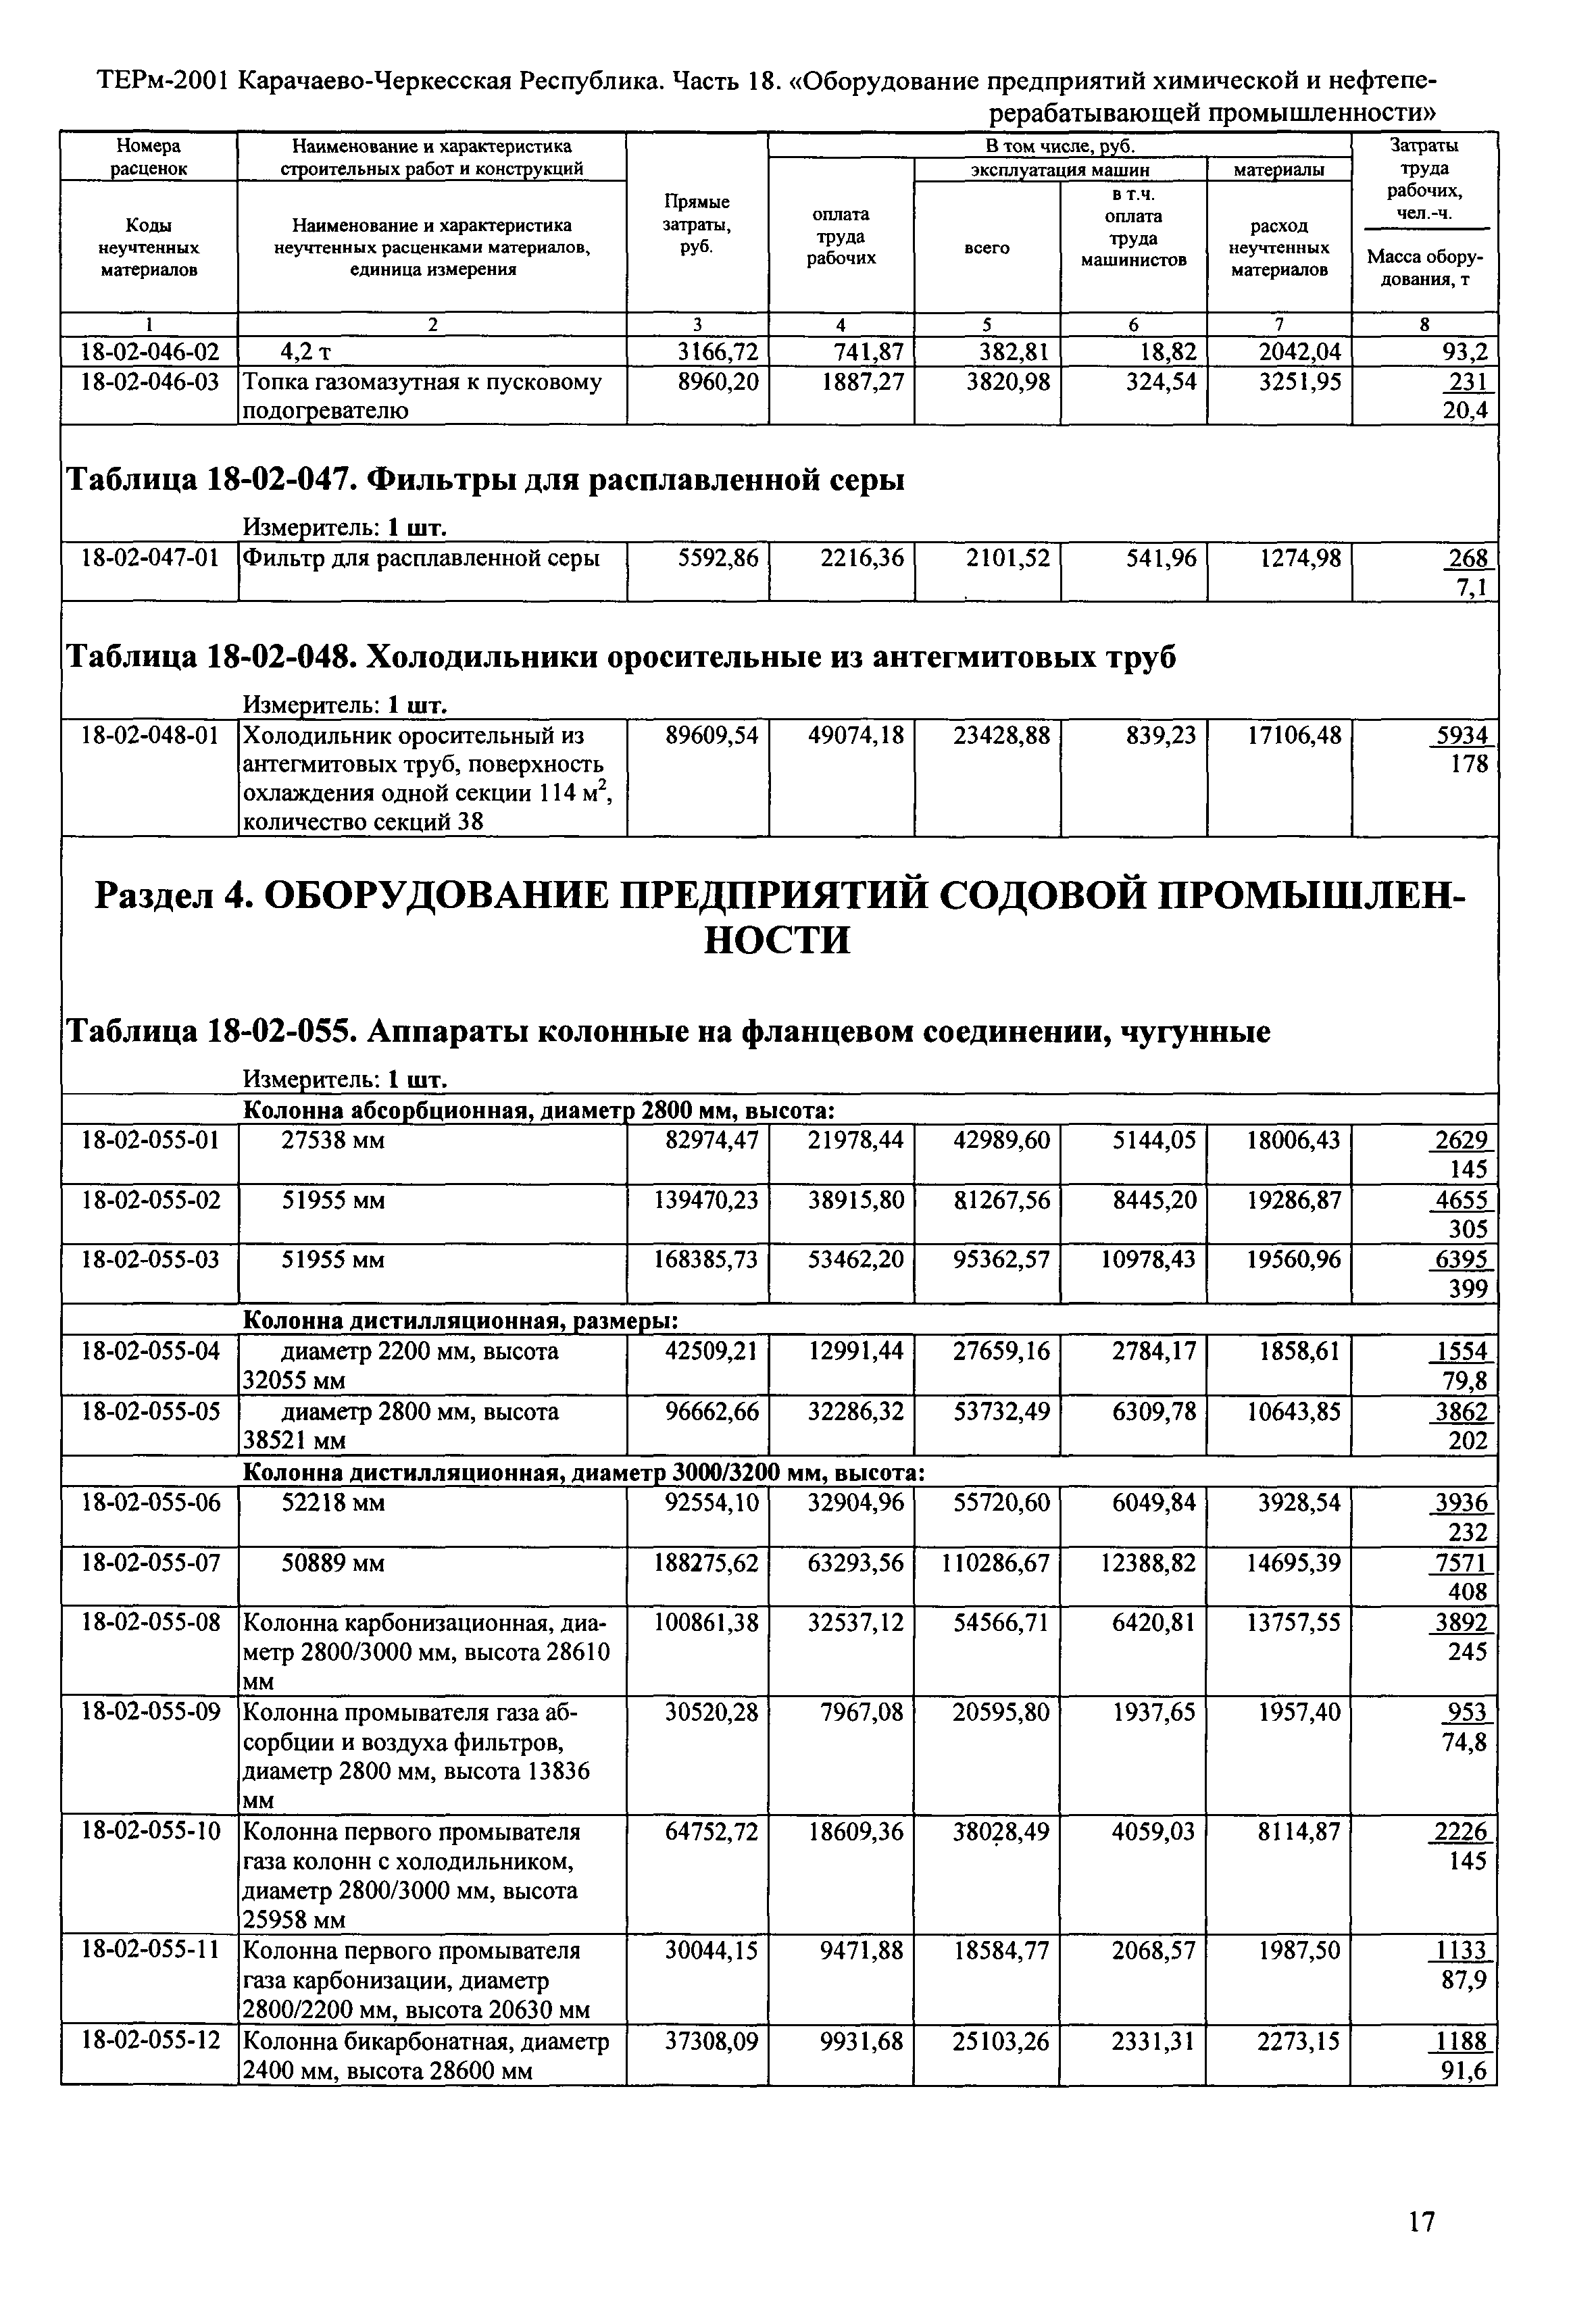 ТЕРм Карачаево-Черкесская Республика 18-2001